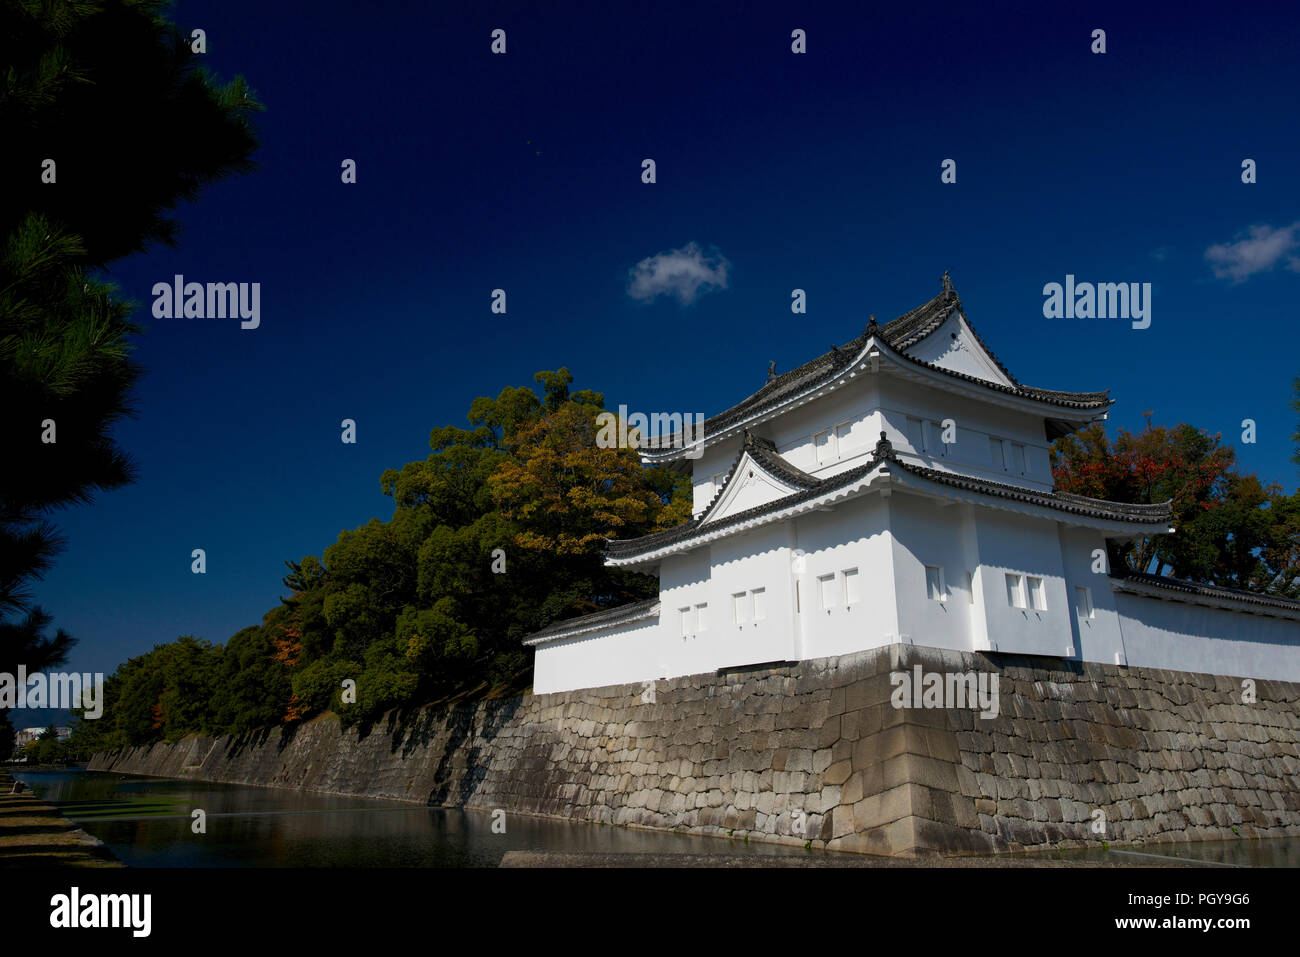 La foto mostra l'angolo sud-est dungeon tower e il fossato esterno del Castello di Nijo a Kyoto, in Giappone il 13 nov. 2014. Il castello fu costruito da shogun di Foto Stock